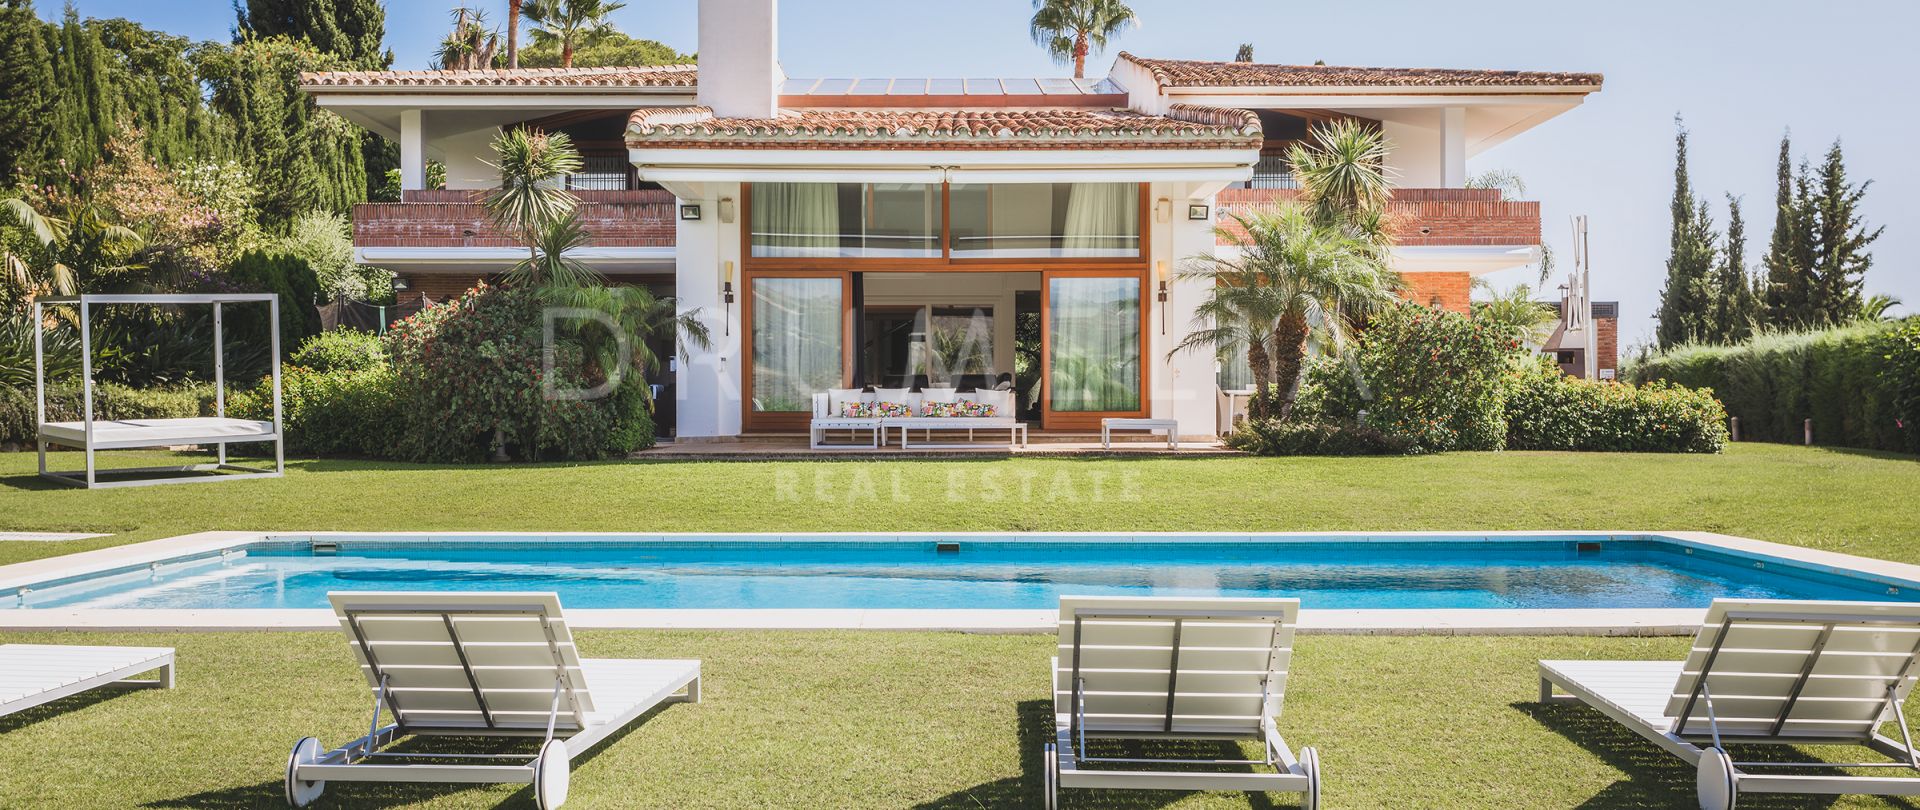 Villa de lujo de estilo clásico moderno con vistas panorámicas al mar en Hacienda las Chapas, Marbella Este